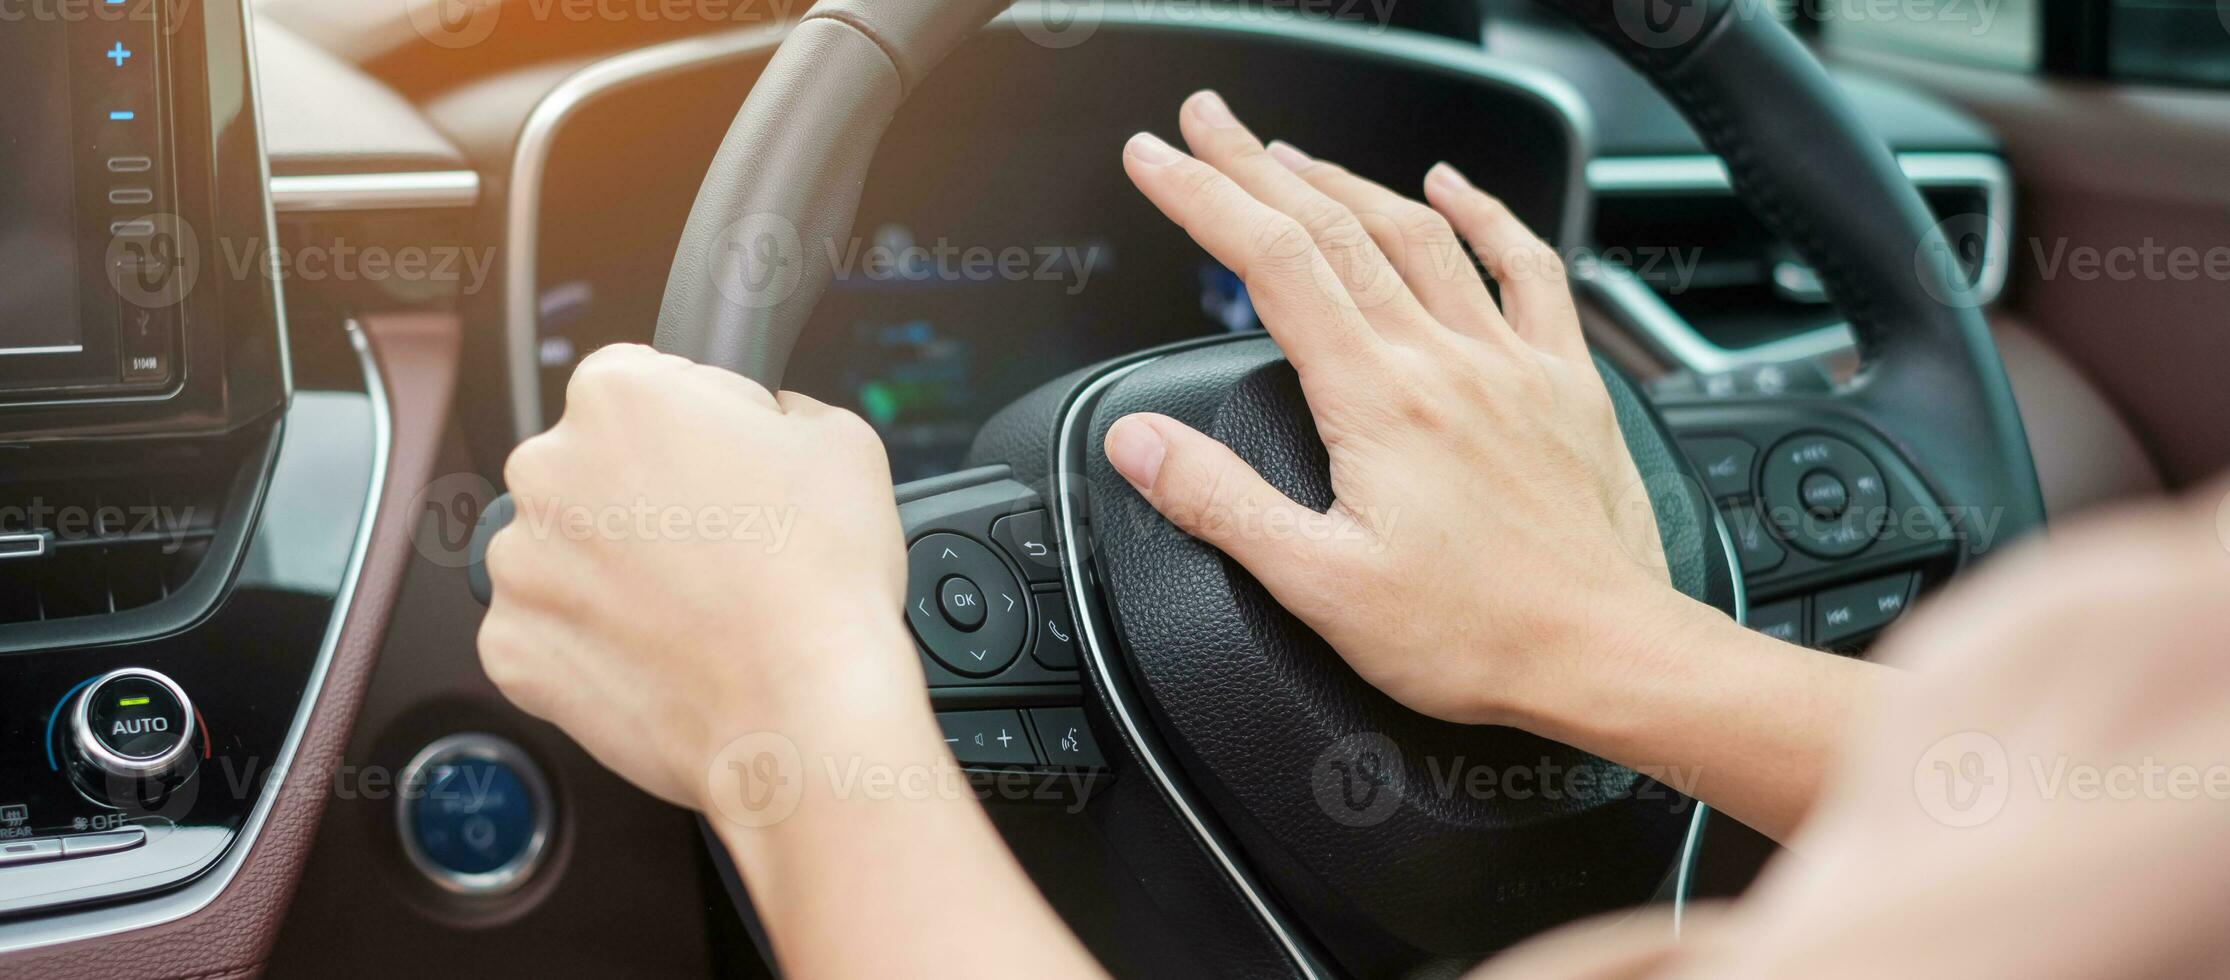 vrouwelijke bestuurder toetert een auto tijdens het rijden op de verkeersweg, handbediening van het stuur in het voertuig. reis-, reis- en veiligheidstransportconcepten foto